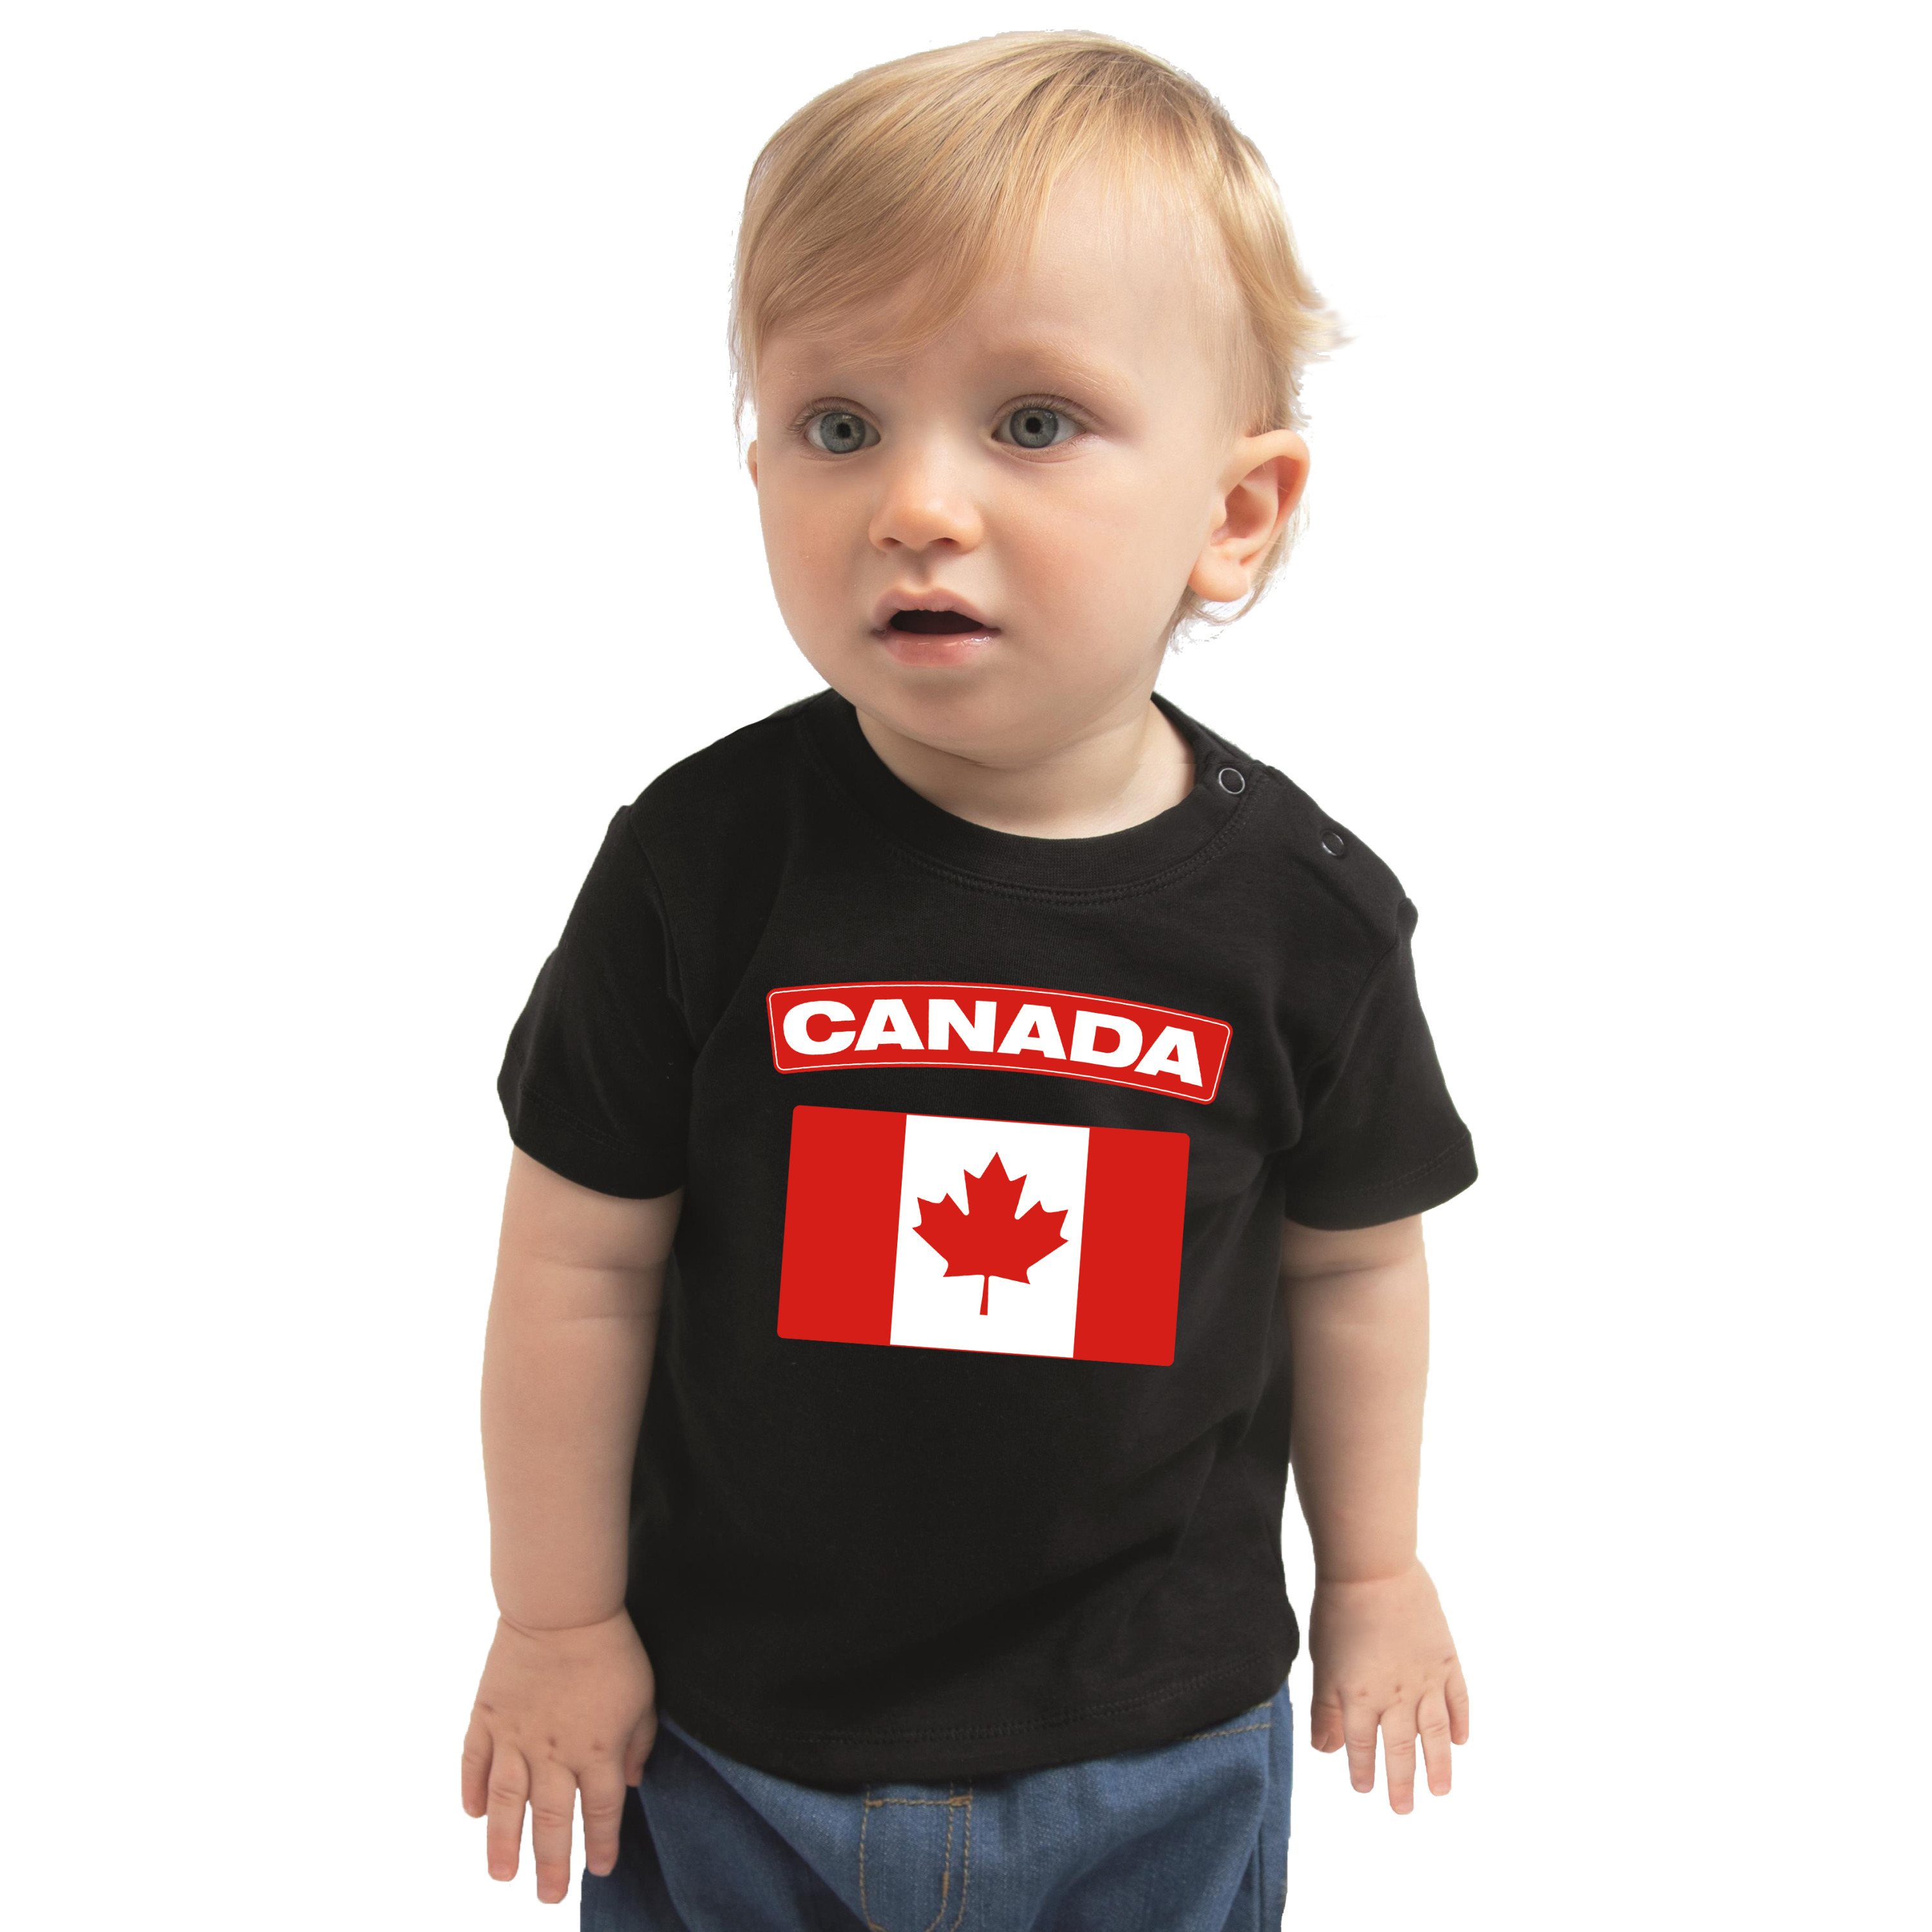 Canada landen shirtje met vlag zwart voor babys